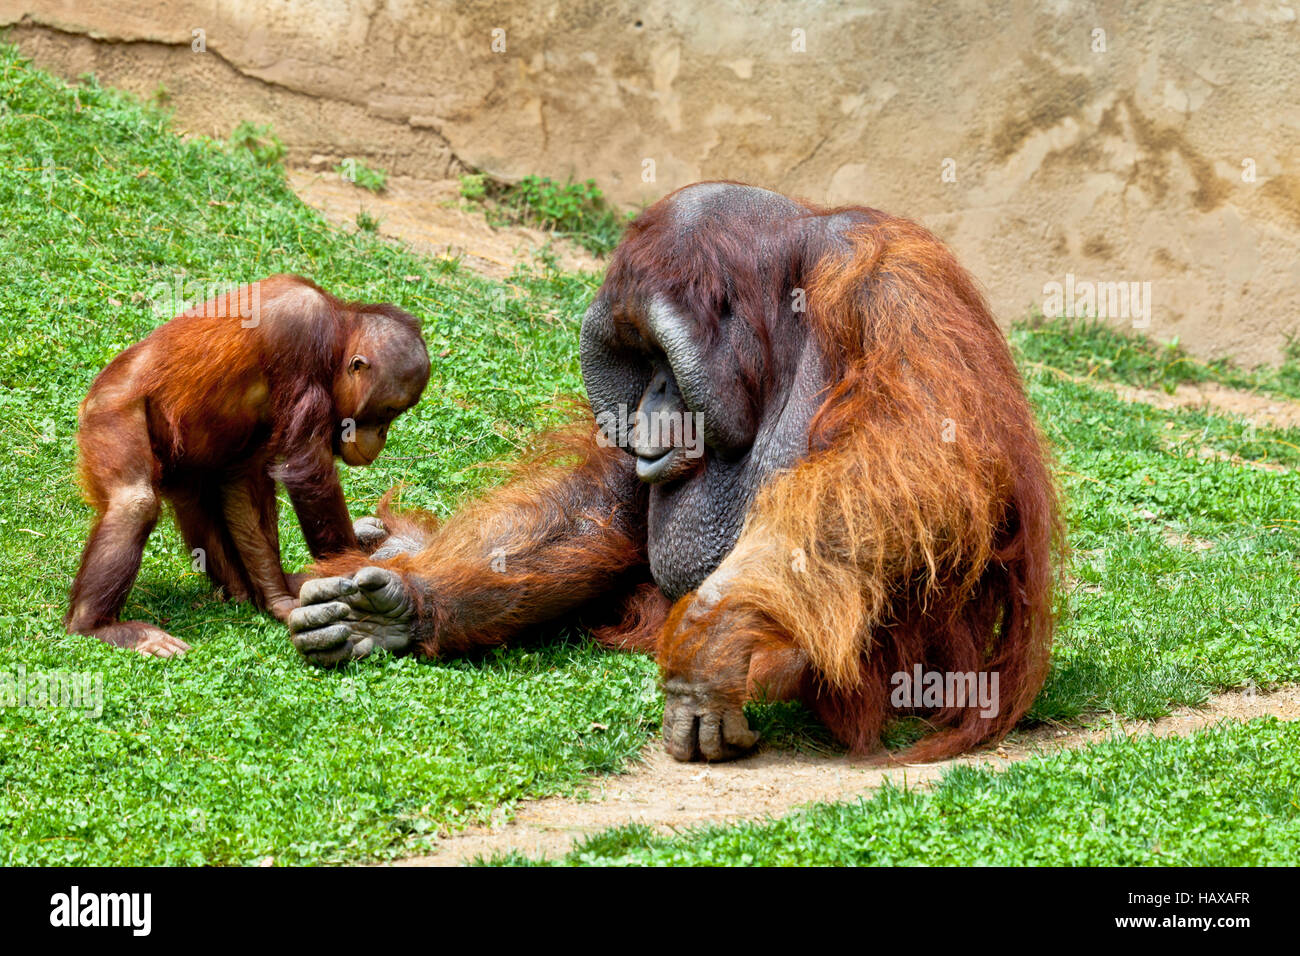 Orangutan of Borneo, Pongo Pygmaeus Stock Photo